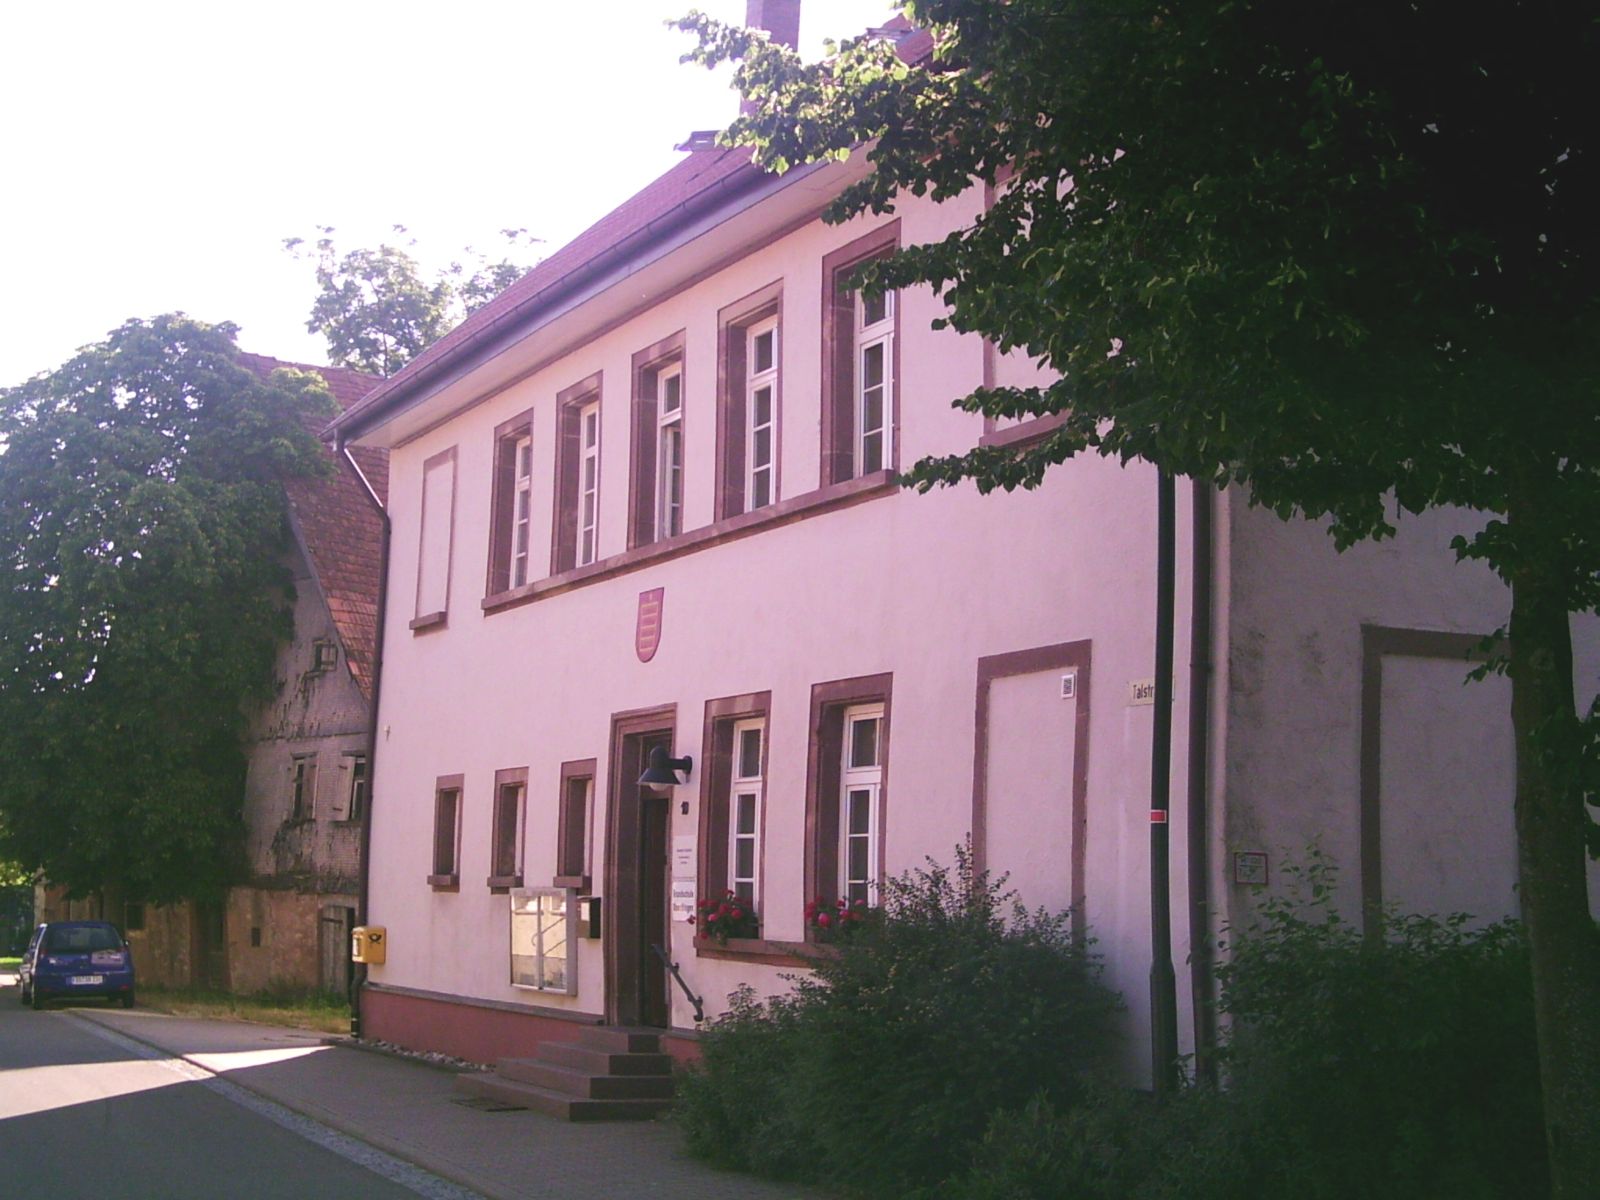  Rathaus, Feuerwehr, Grundschule Oberiflingen - das Bild wird mit einem Klick vergrößert 